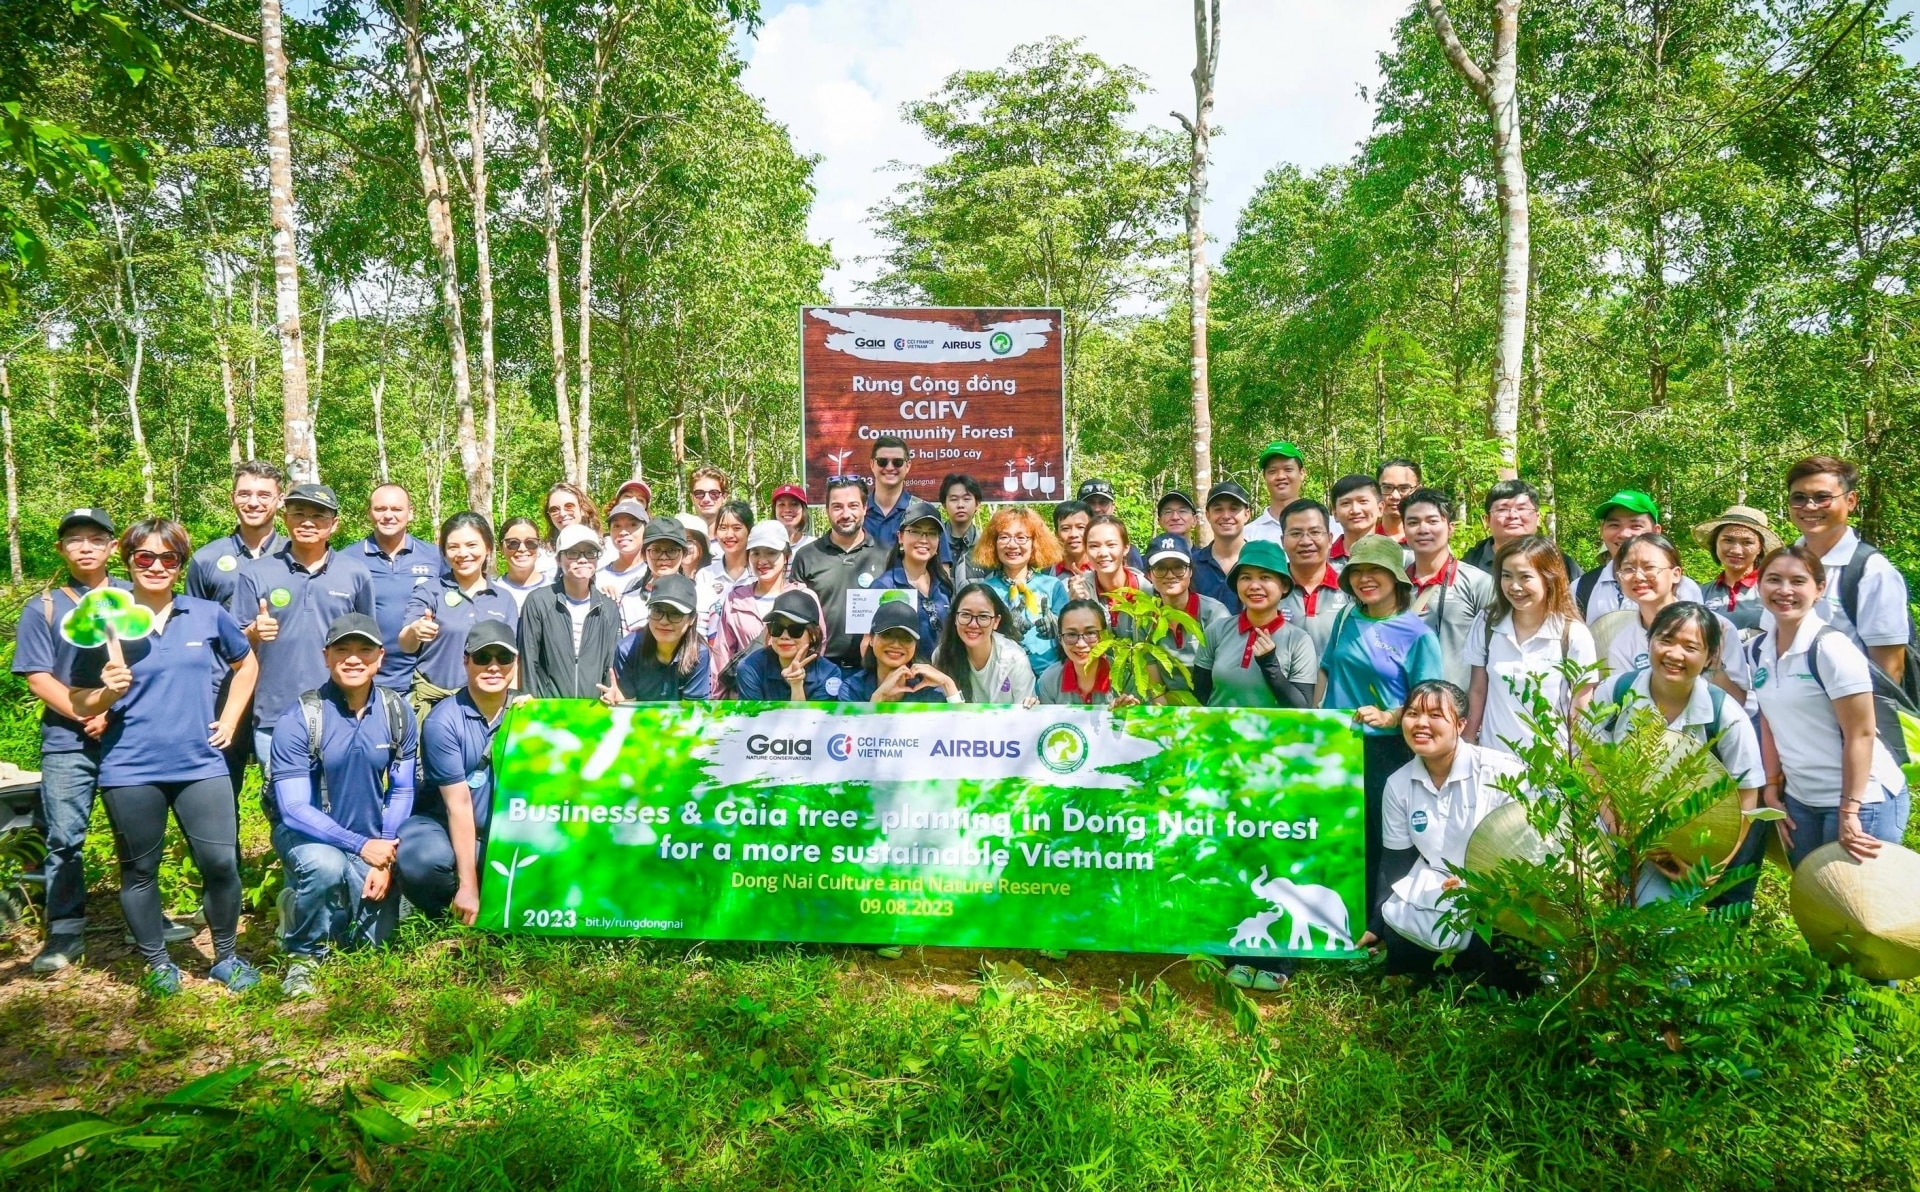 Tập đoàn hàng không Airbus, Phòng Thương mại và Công nghiệp Pháp tại Việt Nam (CCIFV) và Trung tâm Bảo tồn thiên nhiên Gaia chụp hình lưu niệm khi tham gia trồng cây. Ảnh: Trung tâm Bảo tồn thiên nhiên Gaia